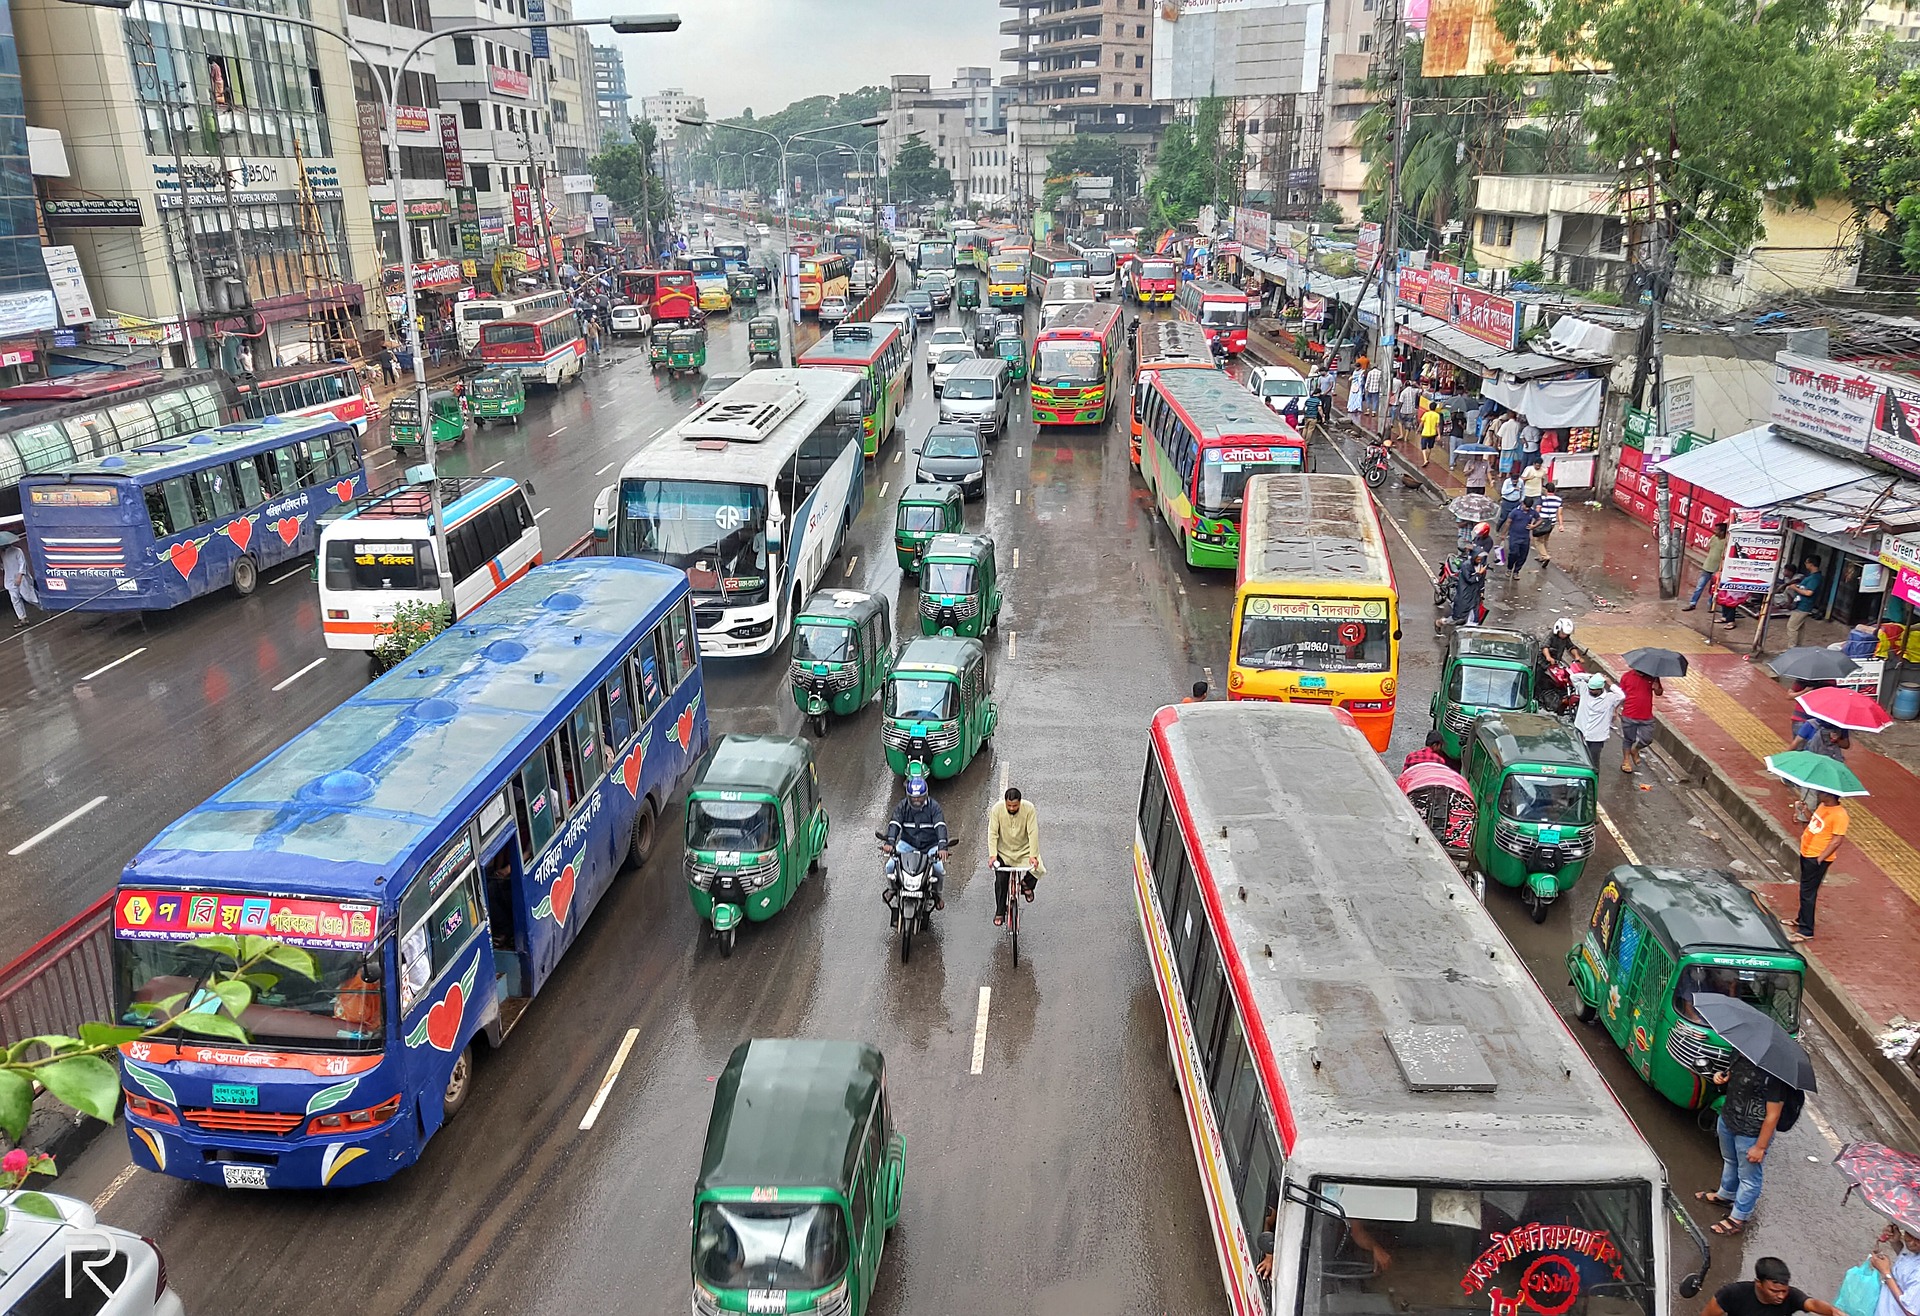 Street scene in Dhaka, the capital of Bangladesh 